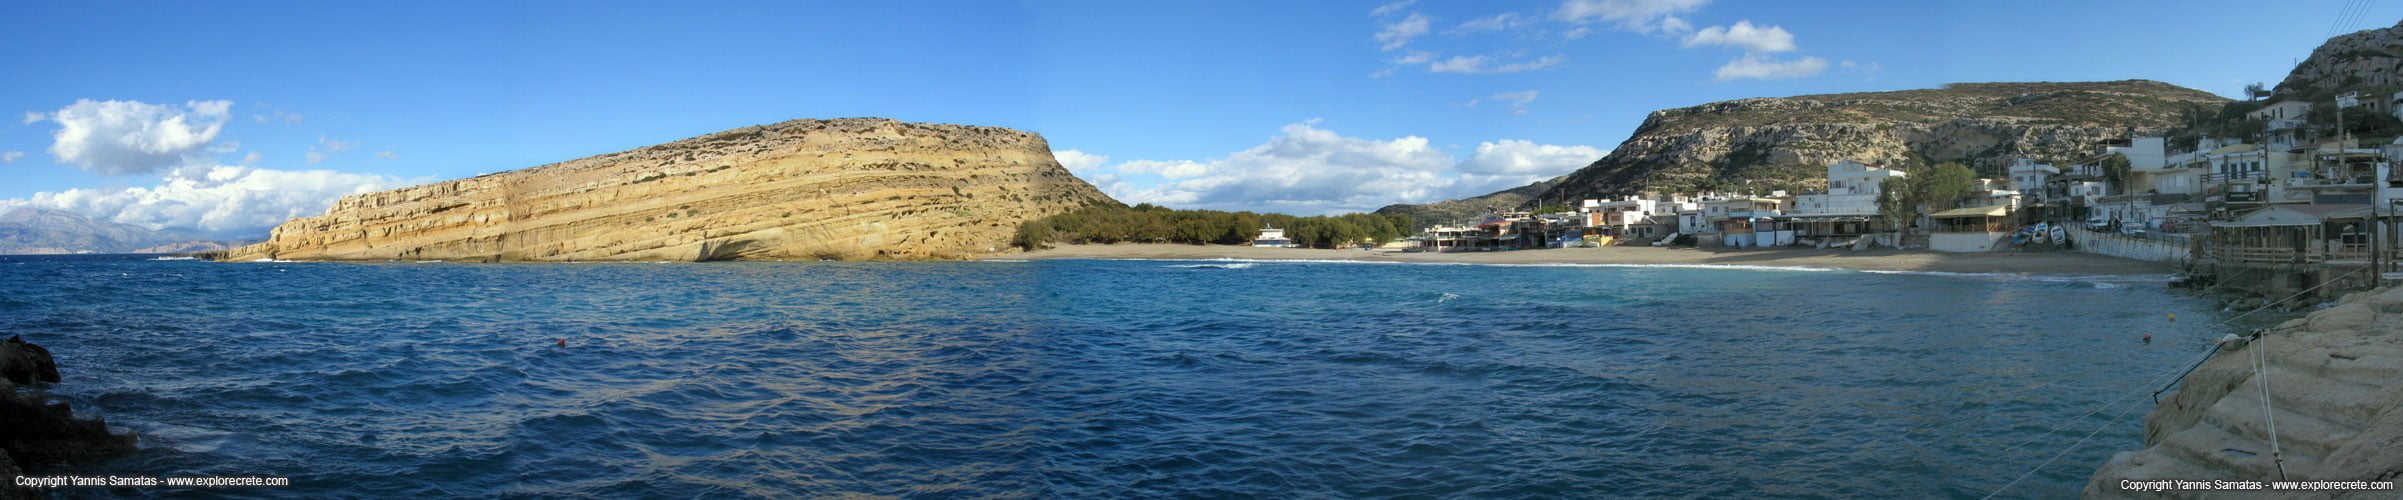 Matala panoramic image